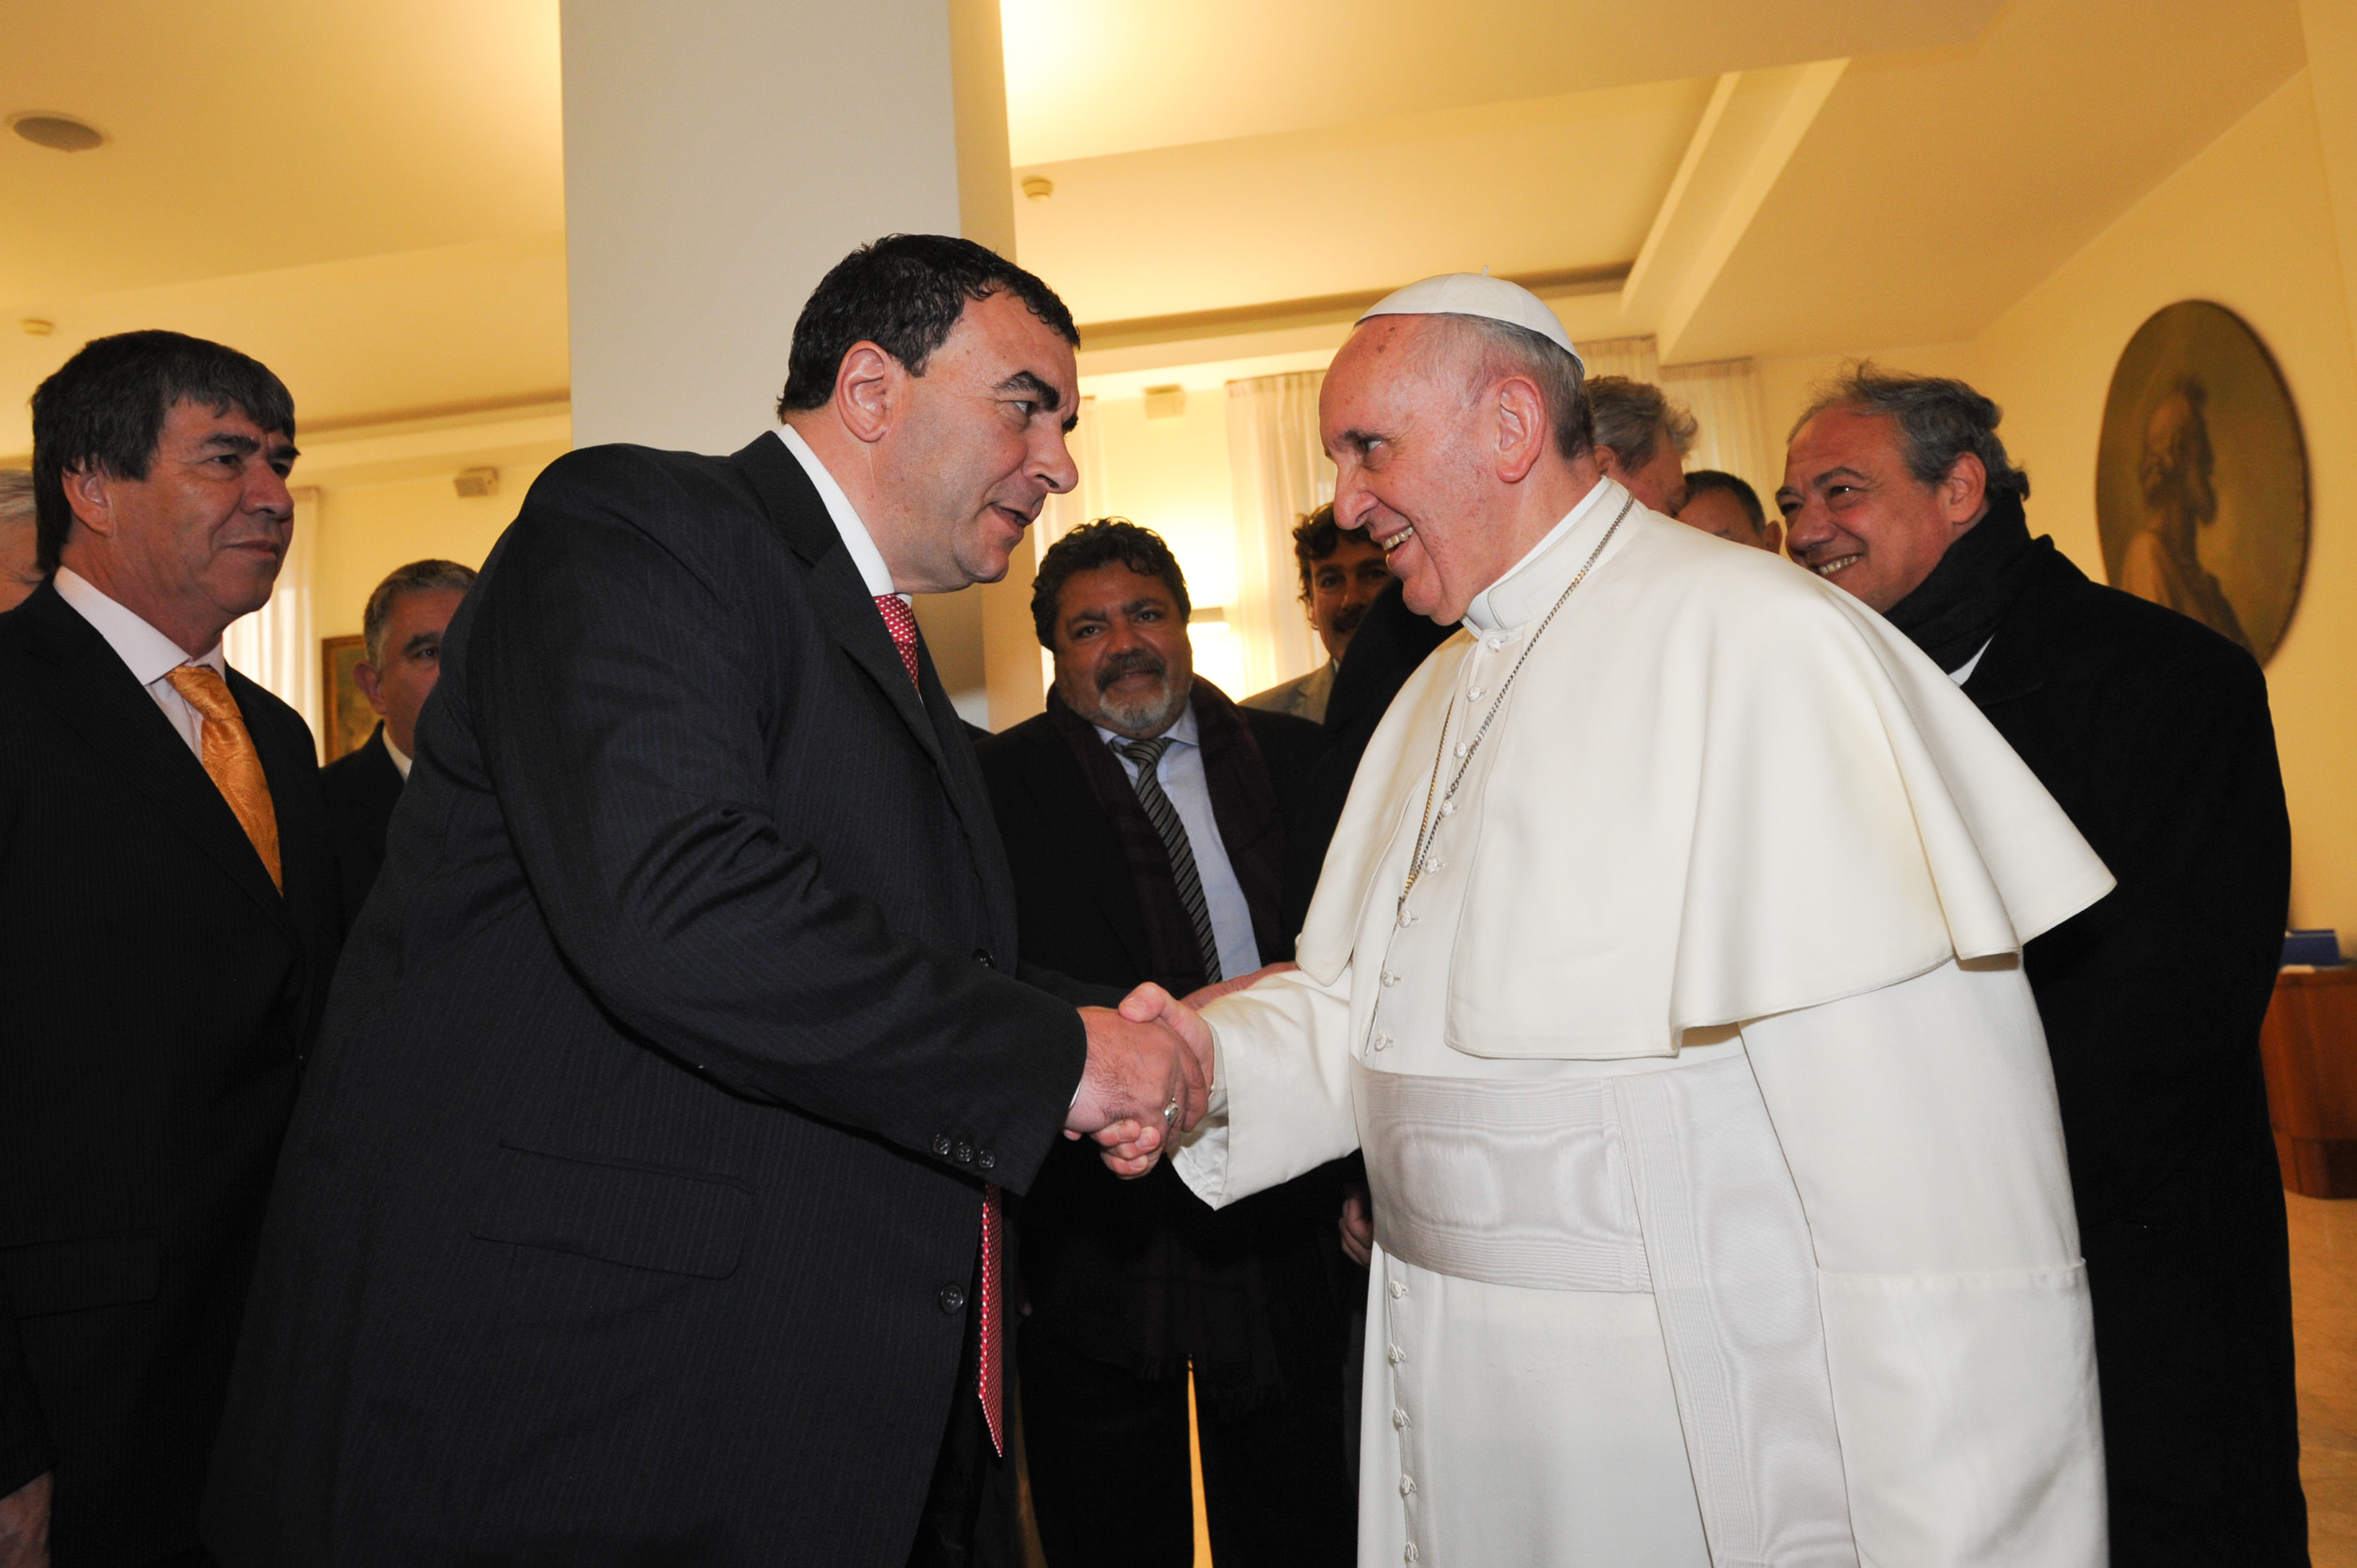 Di Próspero se mostró muy satisfecho por la reunión de la CGT con el Papa